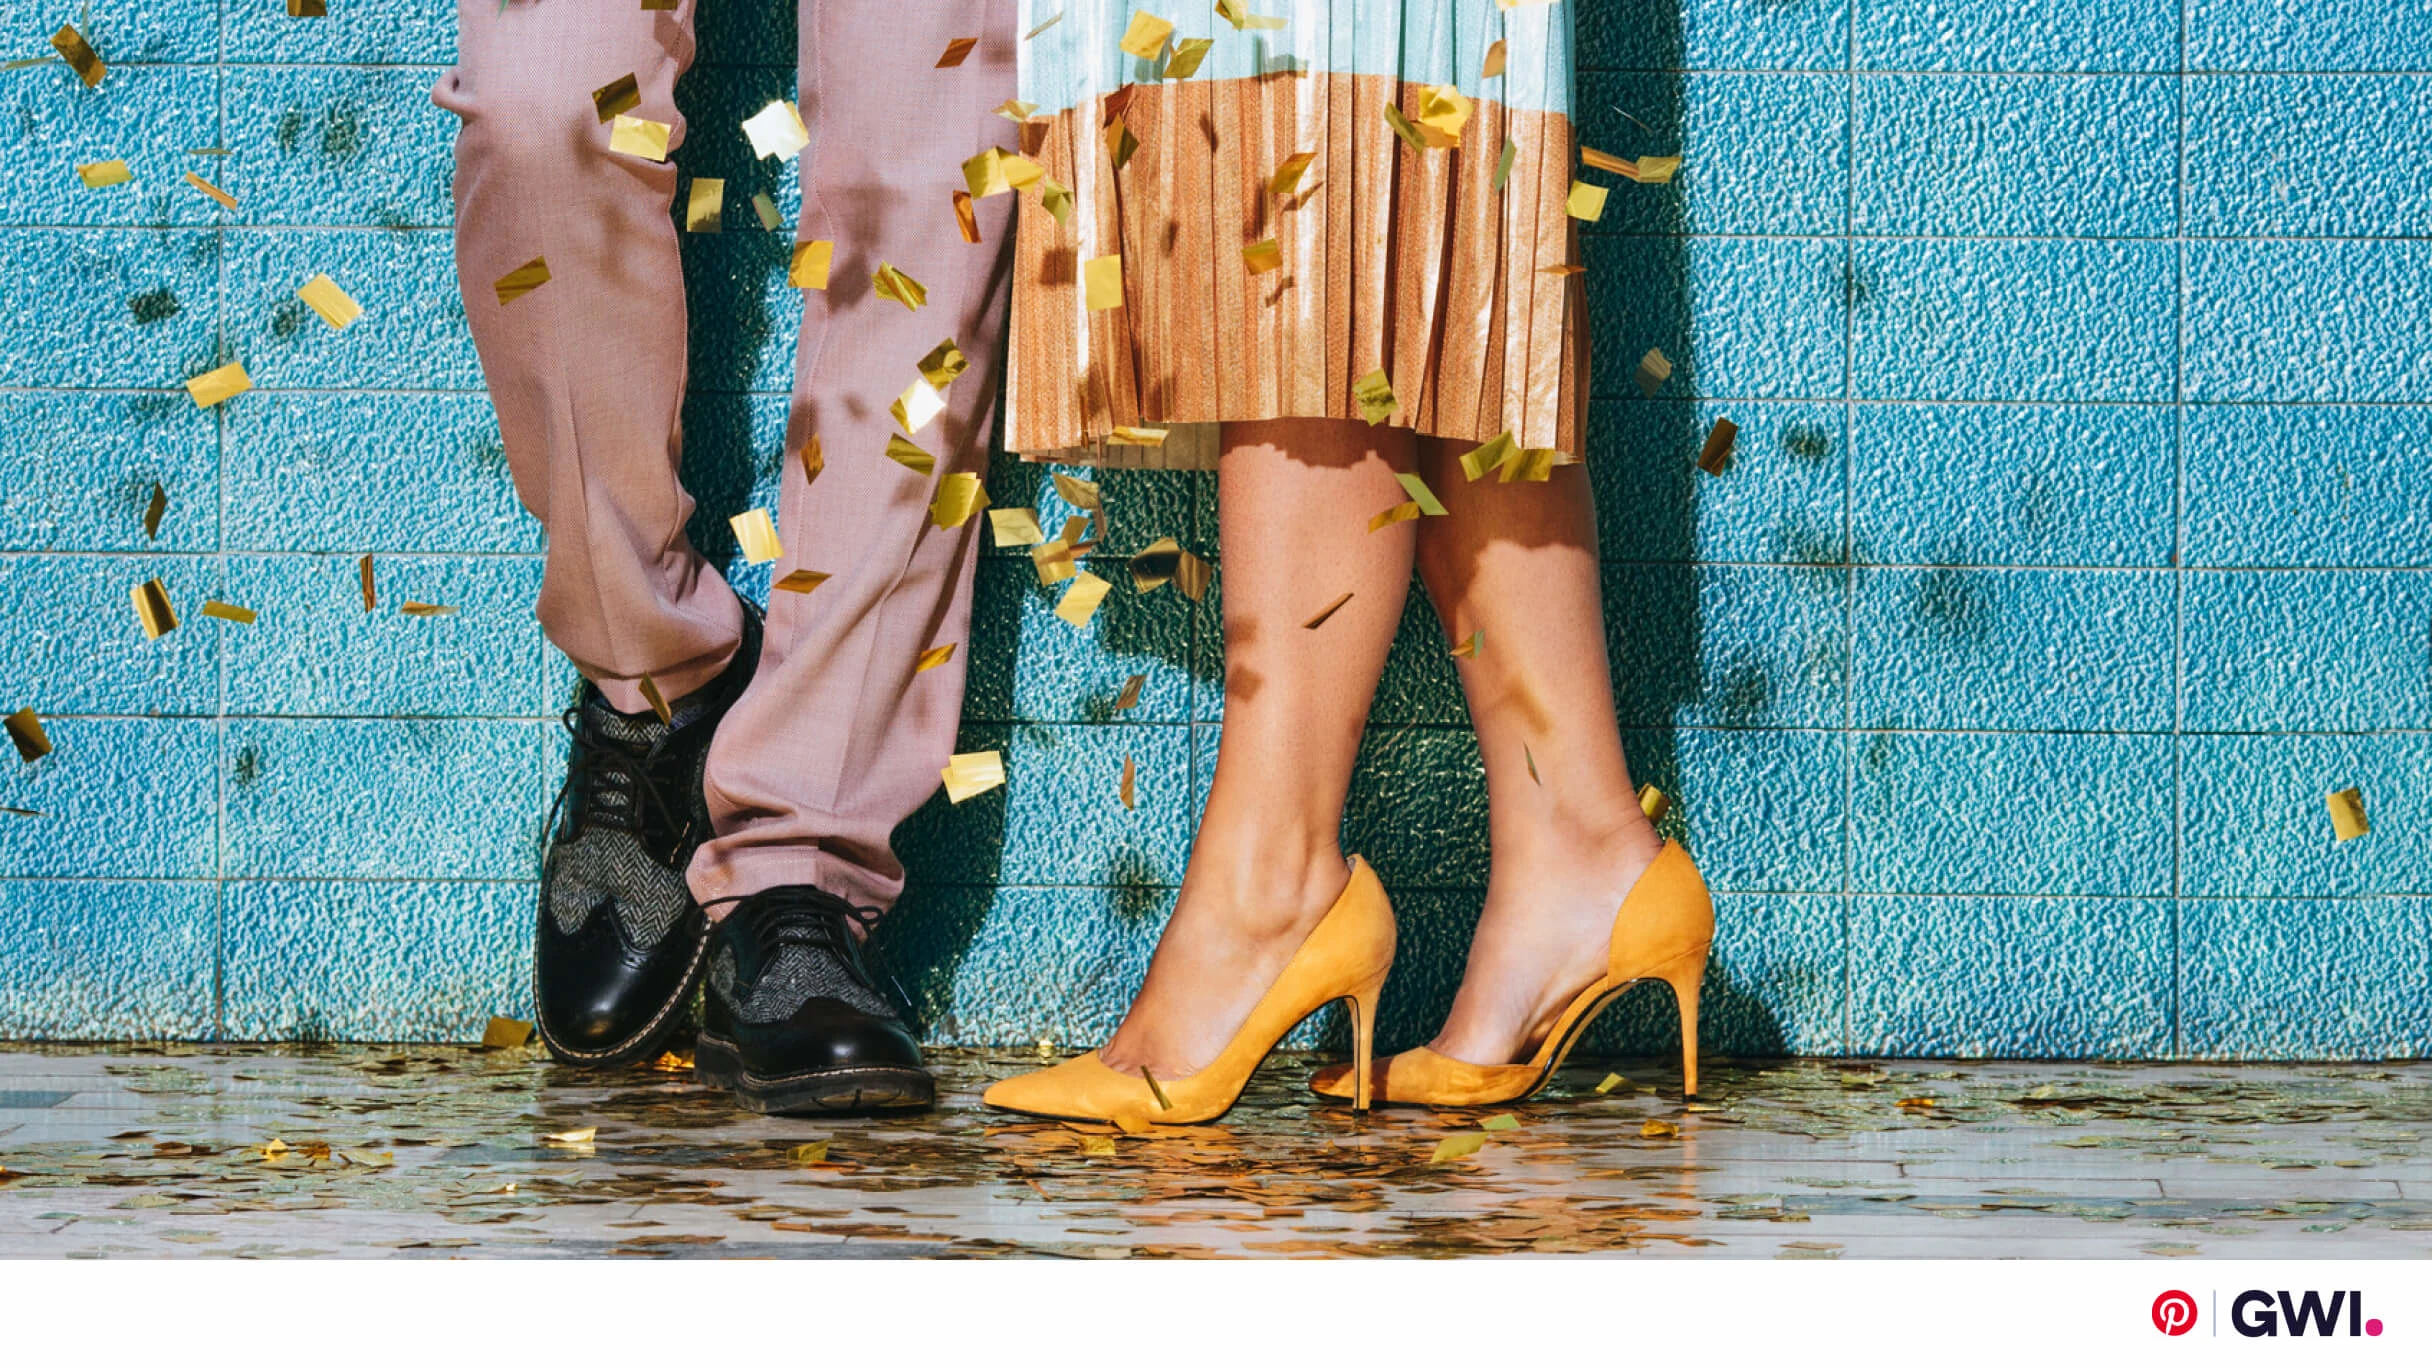 Les jambes de deux personnes se tenant l’une à côté de l’autre contre un mur bleu, entourées de confettis. La personne de gauche porte un pantalon saumon et des chaussures de ville noires. Celle de droite porte une jupe bicolore et des talons jaunes.